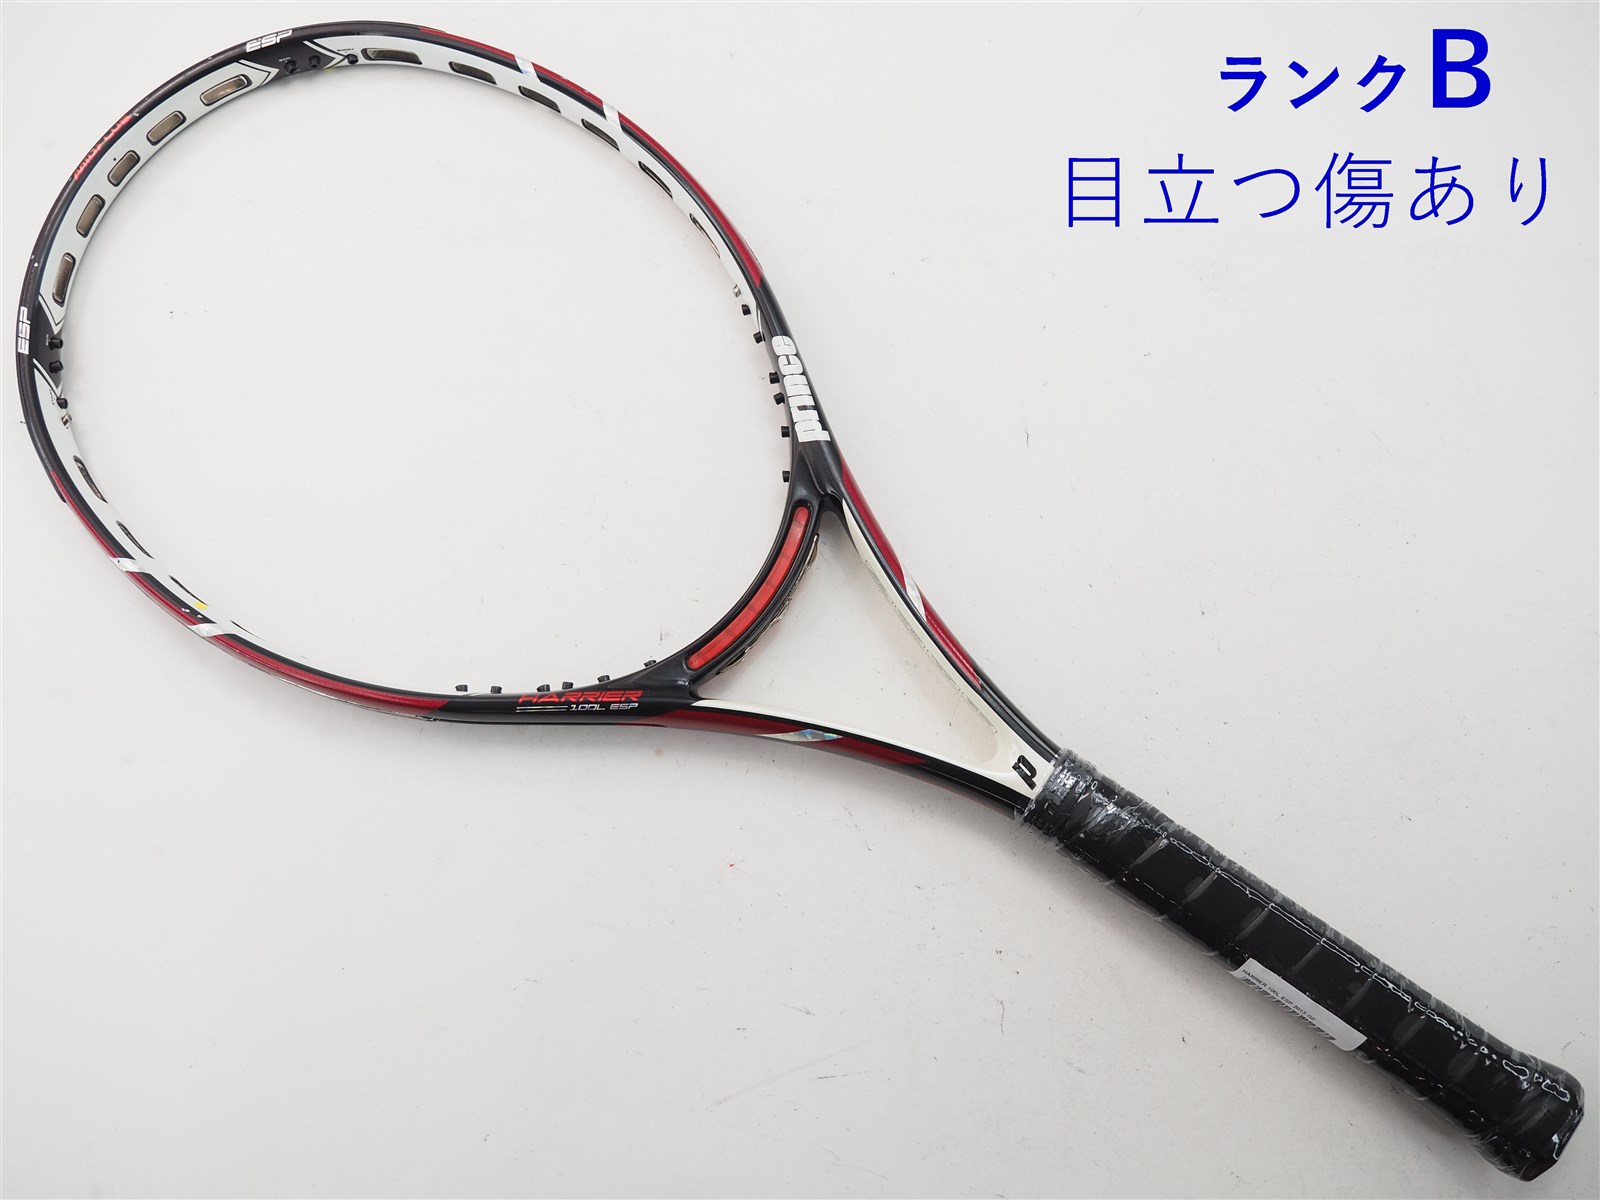 テニスラケット プリンス ハリアー プロ 100 2013年モデル (G2)PRINCE HARRIER PRO 100 2013